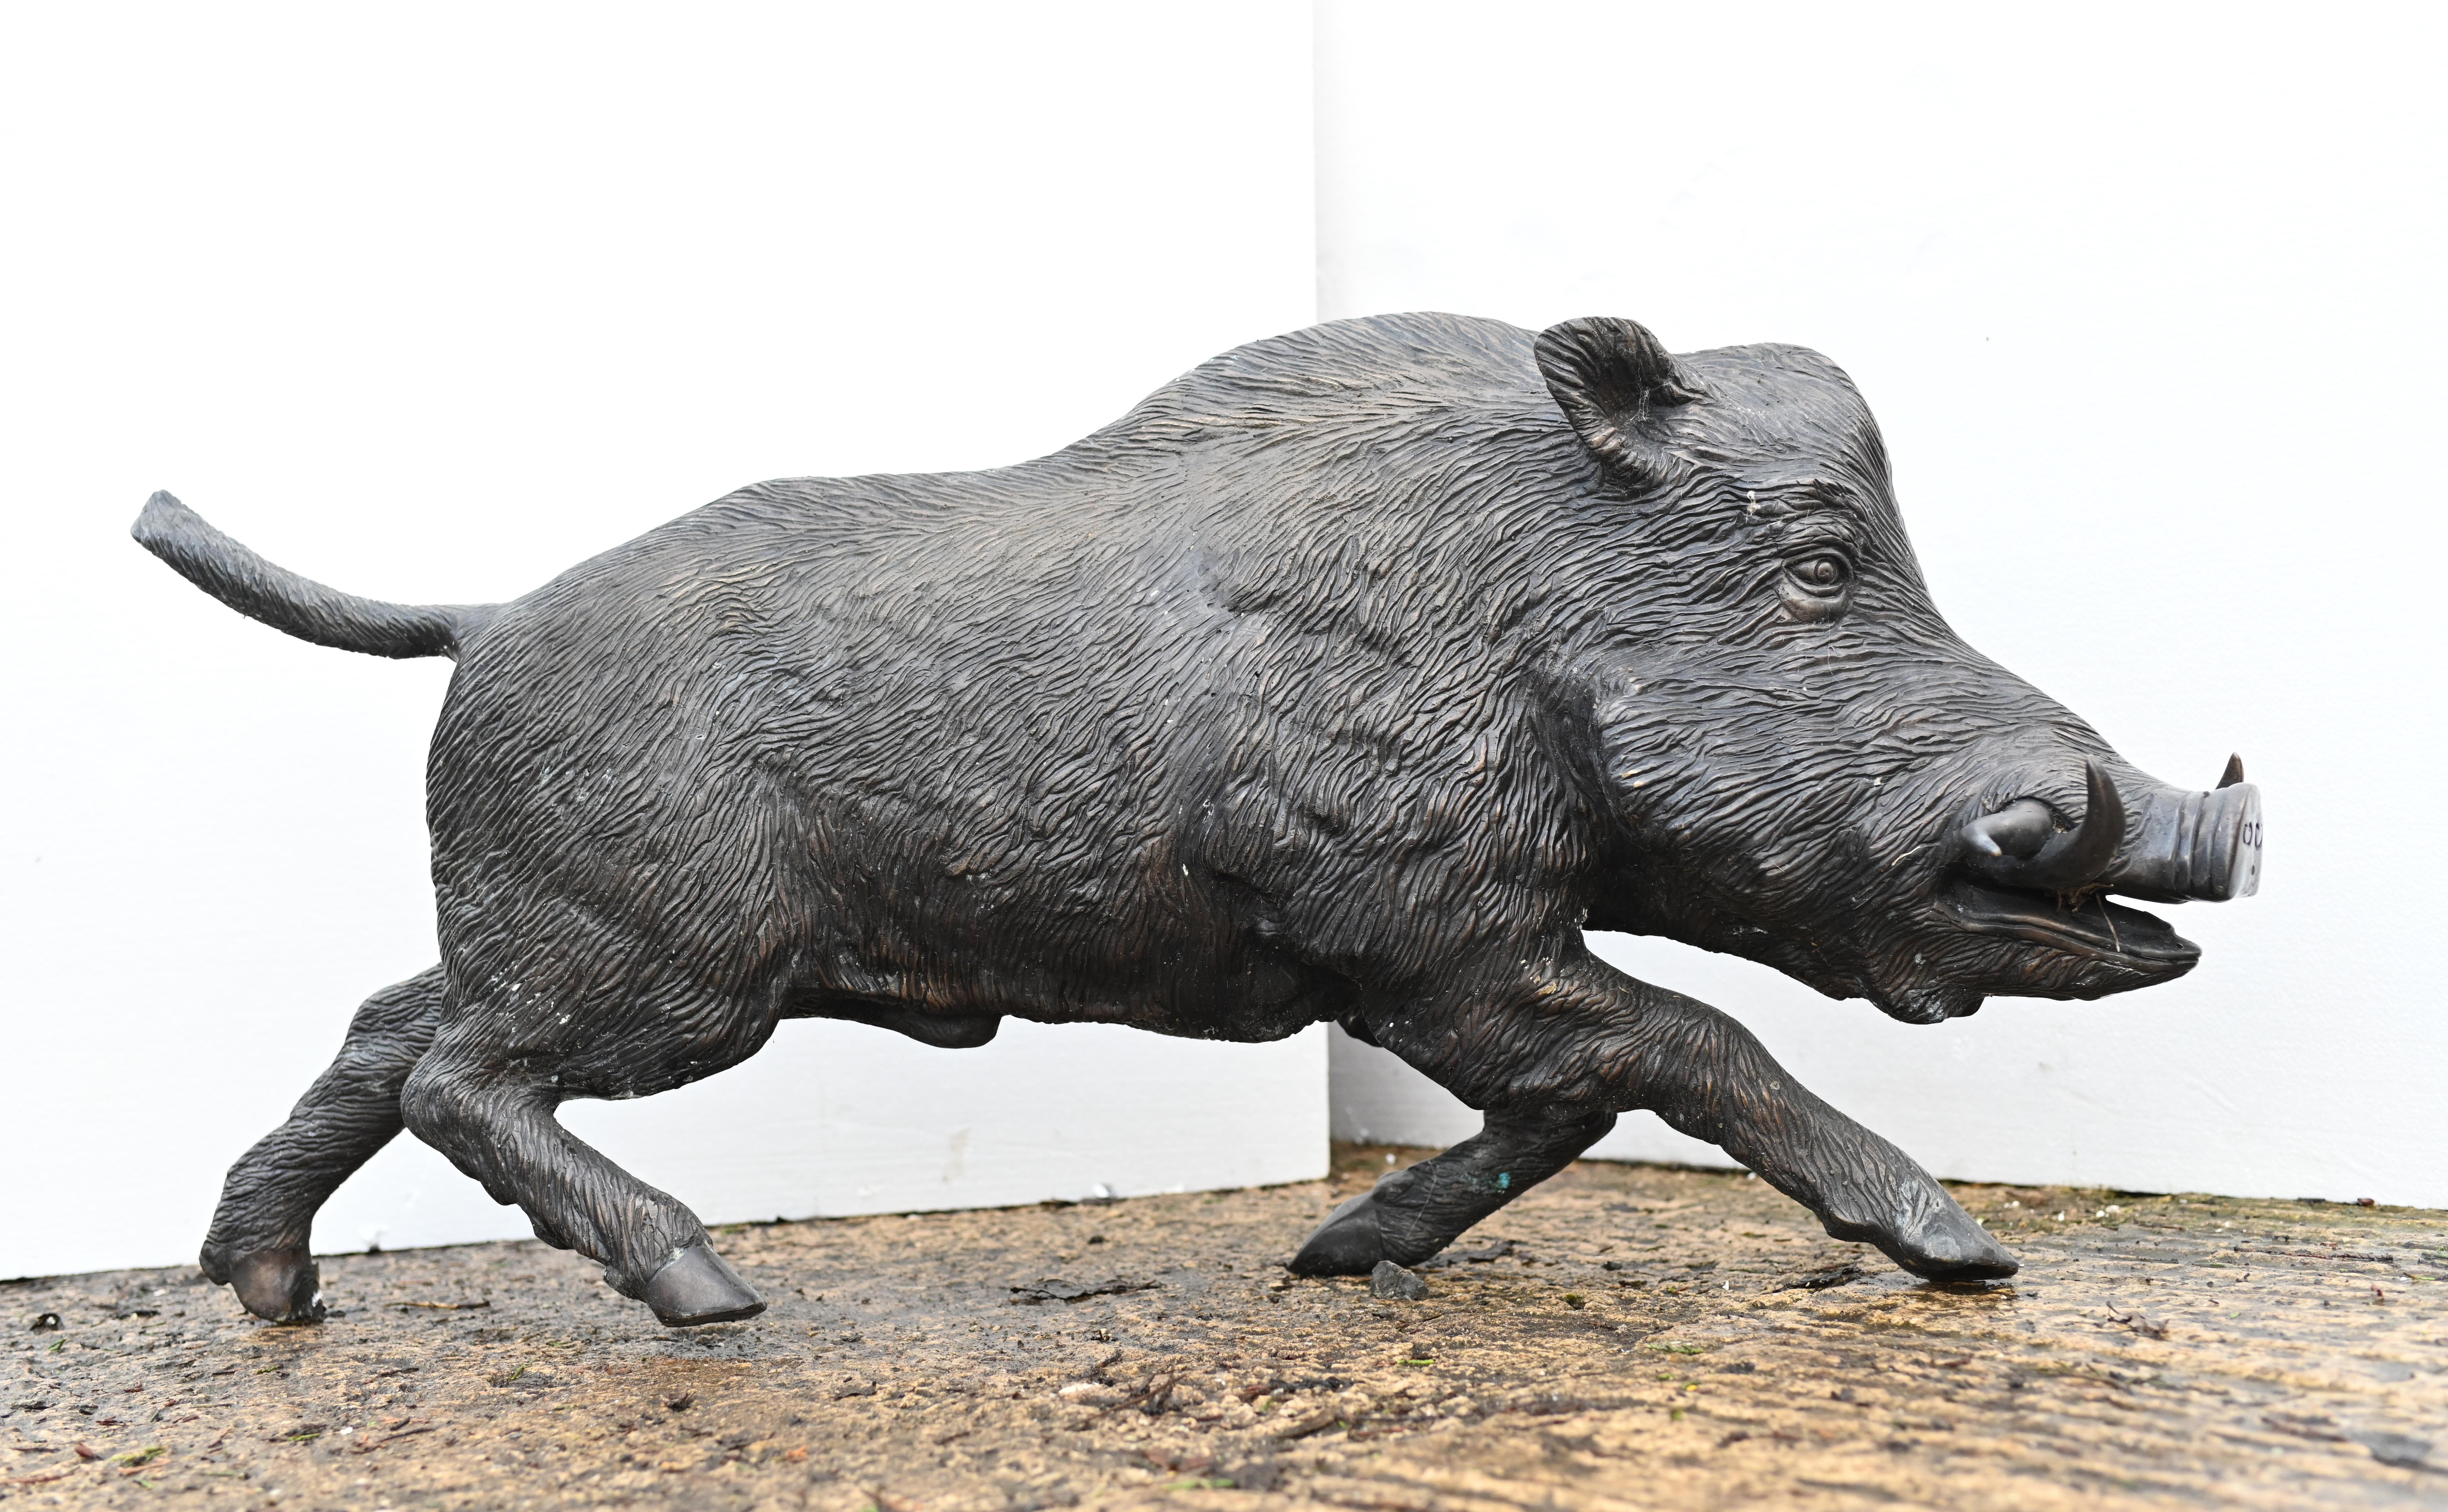 Wunderschöner Bronzeguss eines lebensgroßen Schweins oder Wildschweins
Misst fast vier Fuß in der Länge - 101 CM
-das Wildschwein wurde von vielen Kulturen, insbesondere den Kelten, wegen seiner furchtlosen, kriegerischen Eigenschaften verehrt
Die